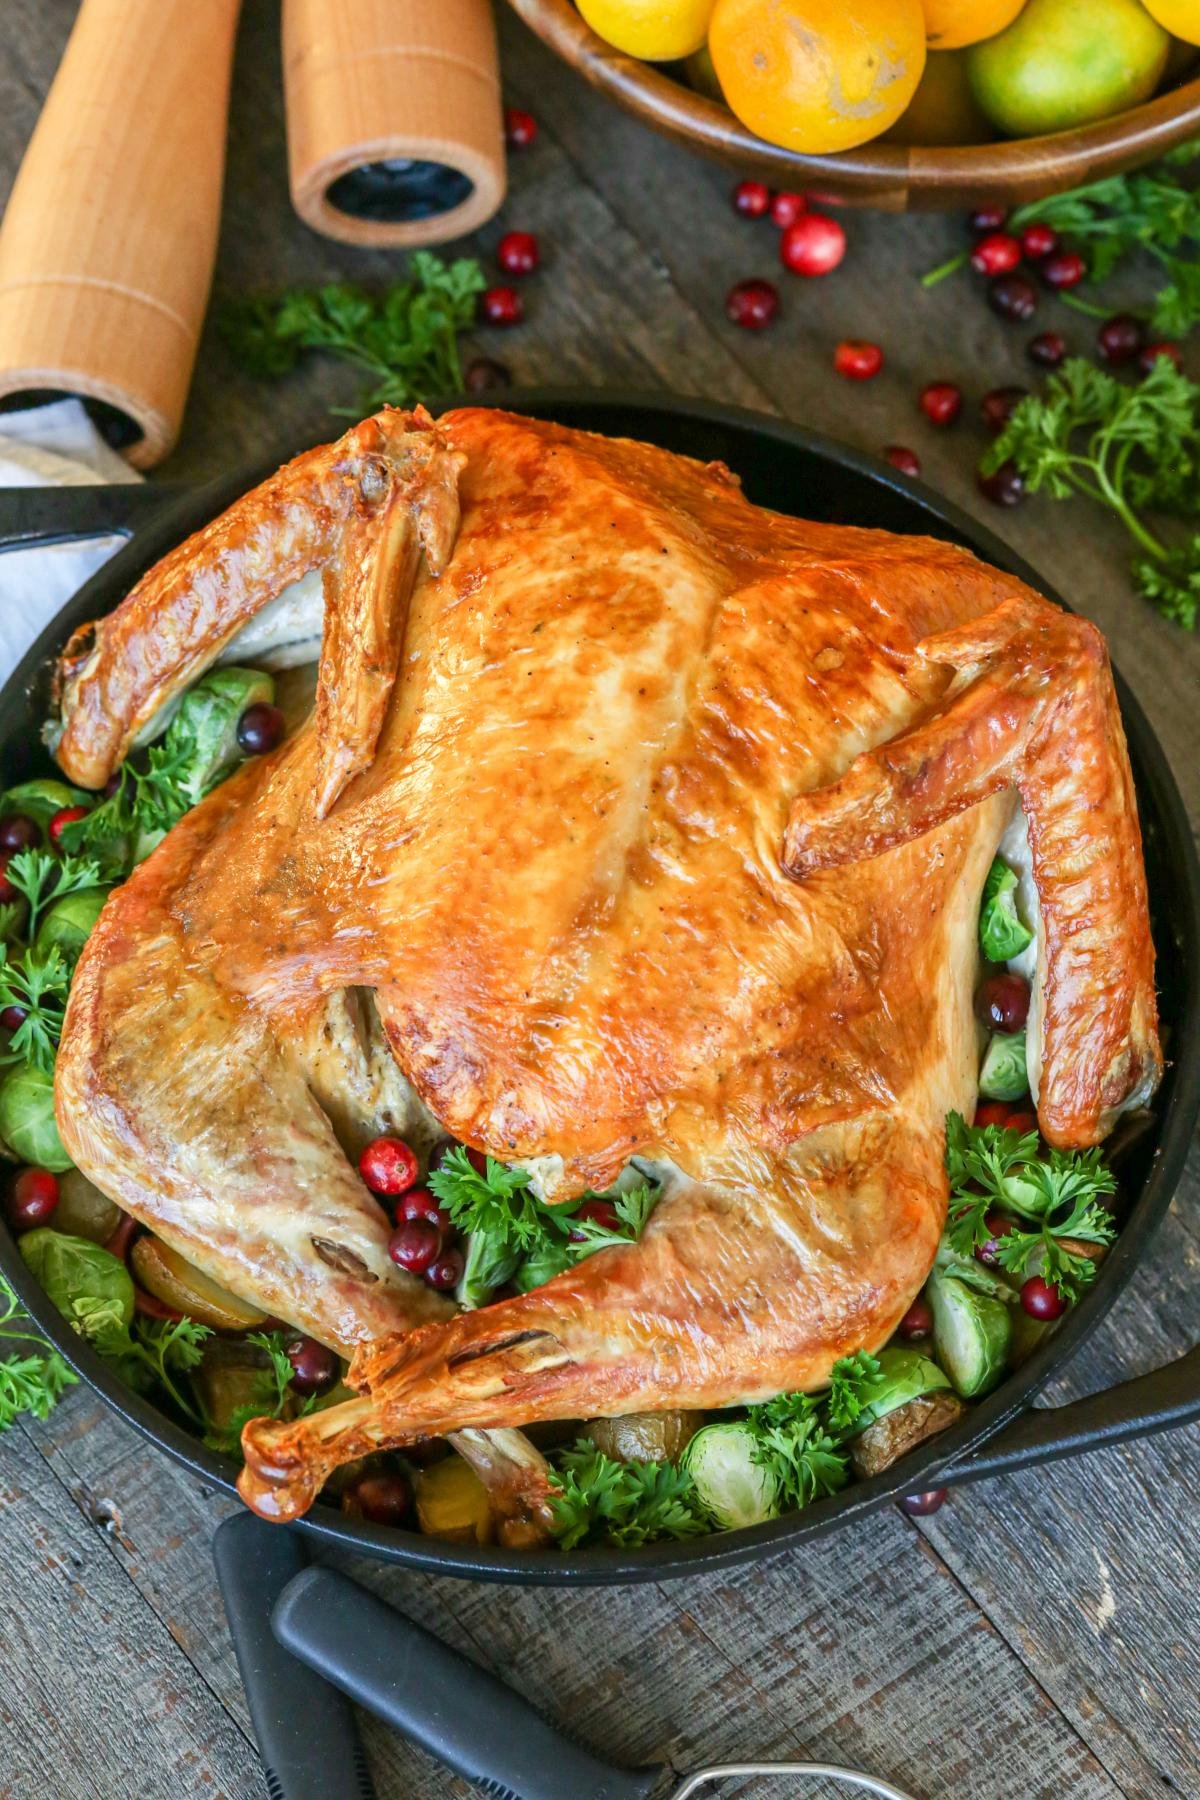 Easiest Roasted Turkey Recipe Ever - Momsdish